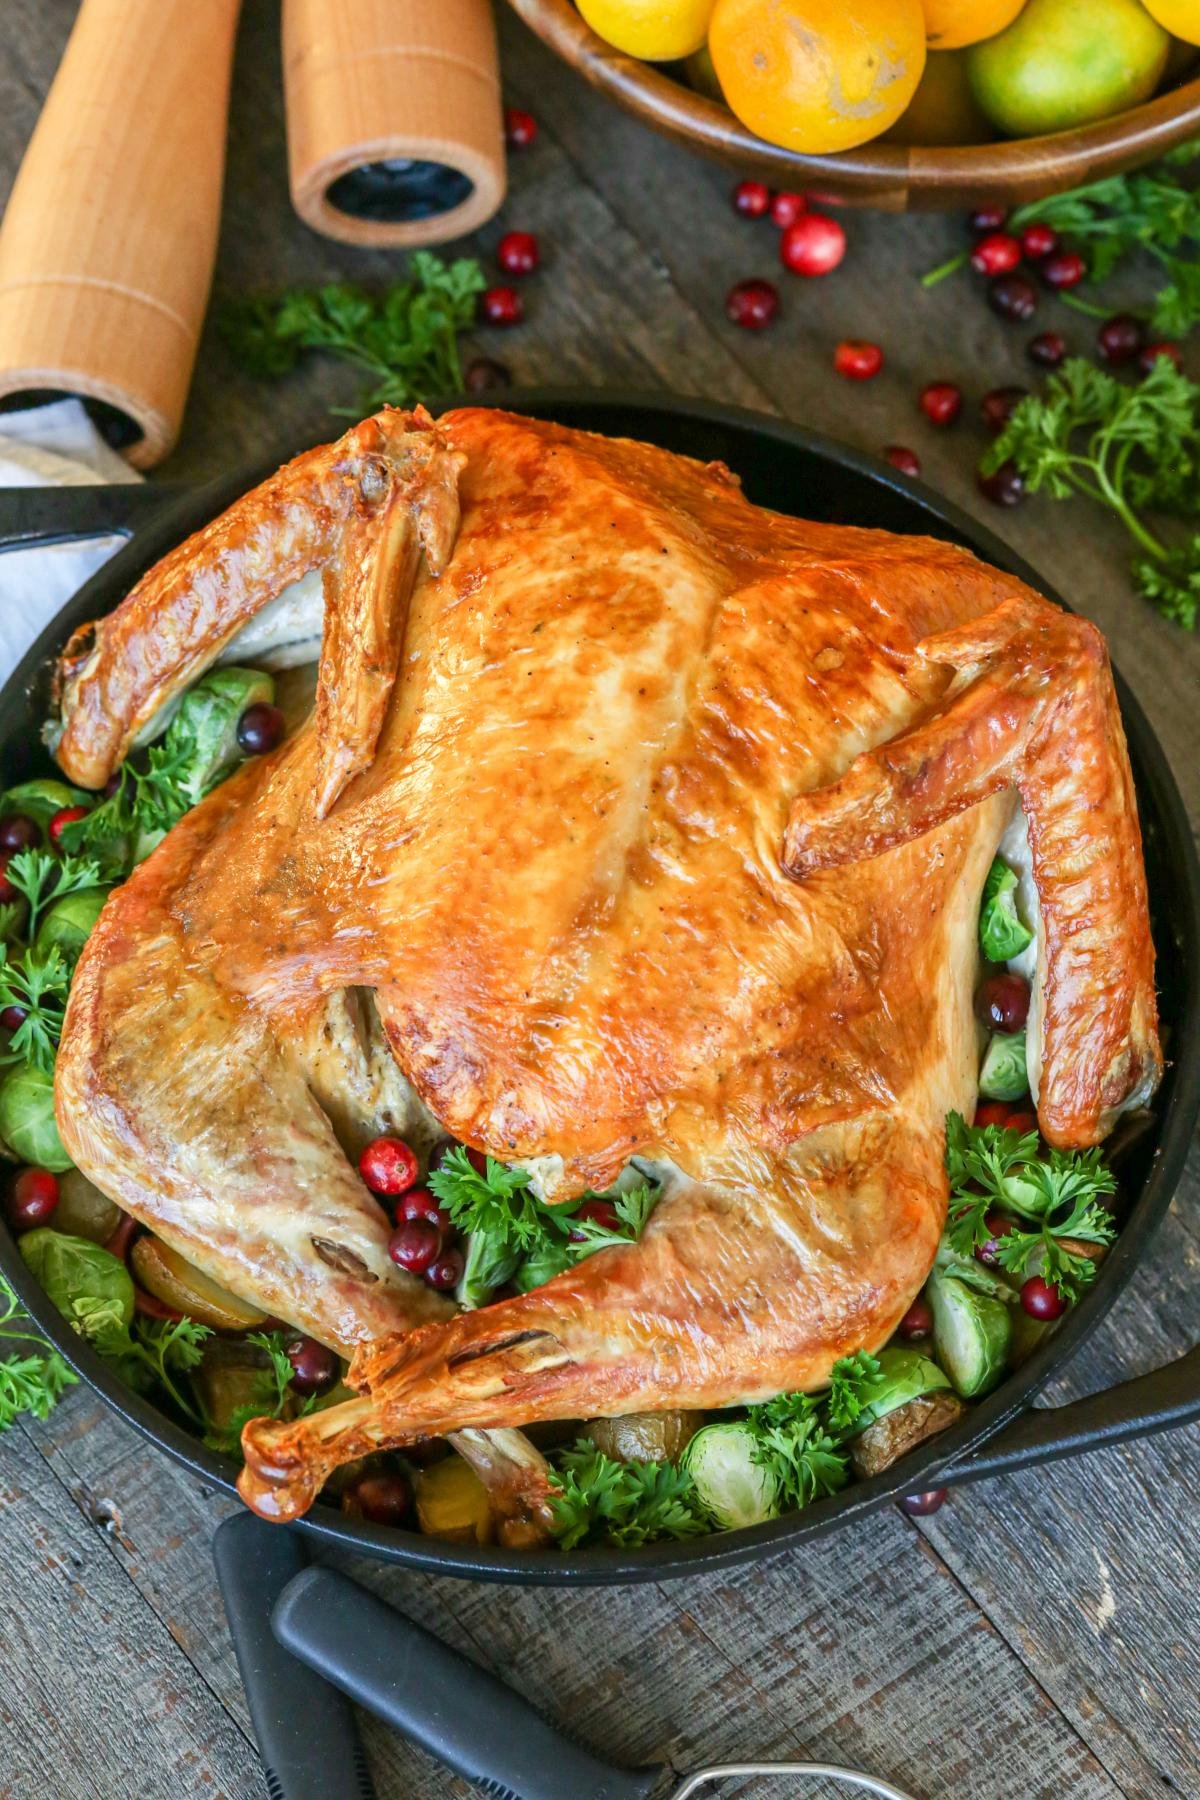 Easiest Roasted Turkey Recipe Ever - Momsdish